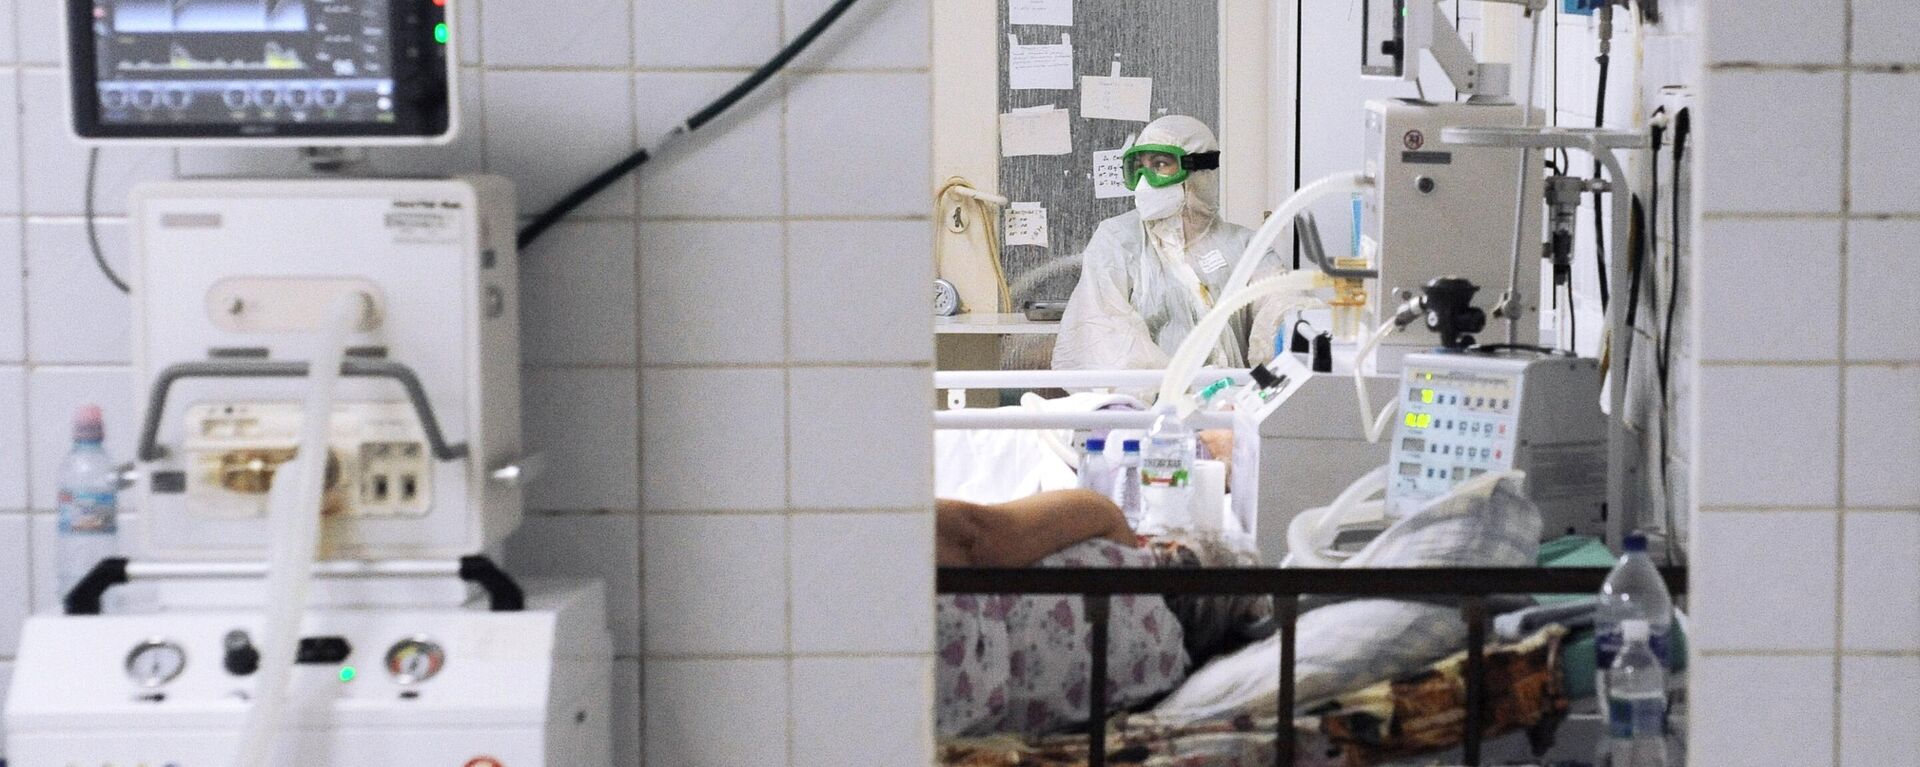 Лечение пациентов с Covid-19 в красной зоне больницы города Рассказово - Sputnik Абхазия, 1920, 26.11.2021